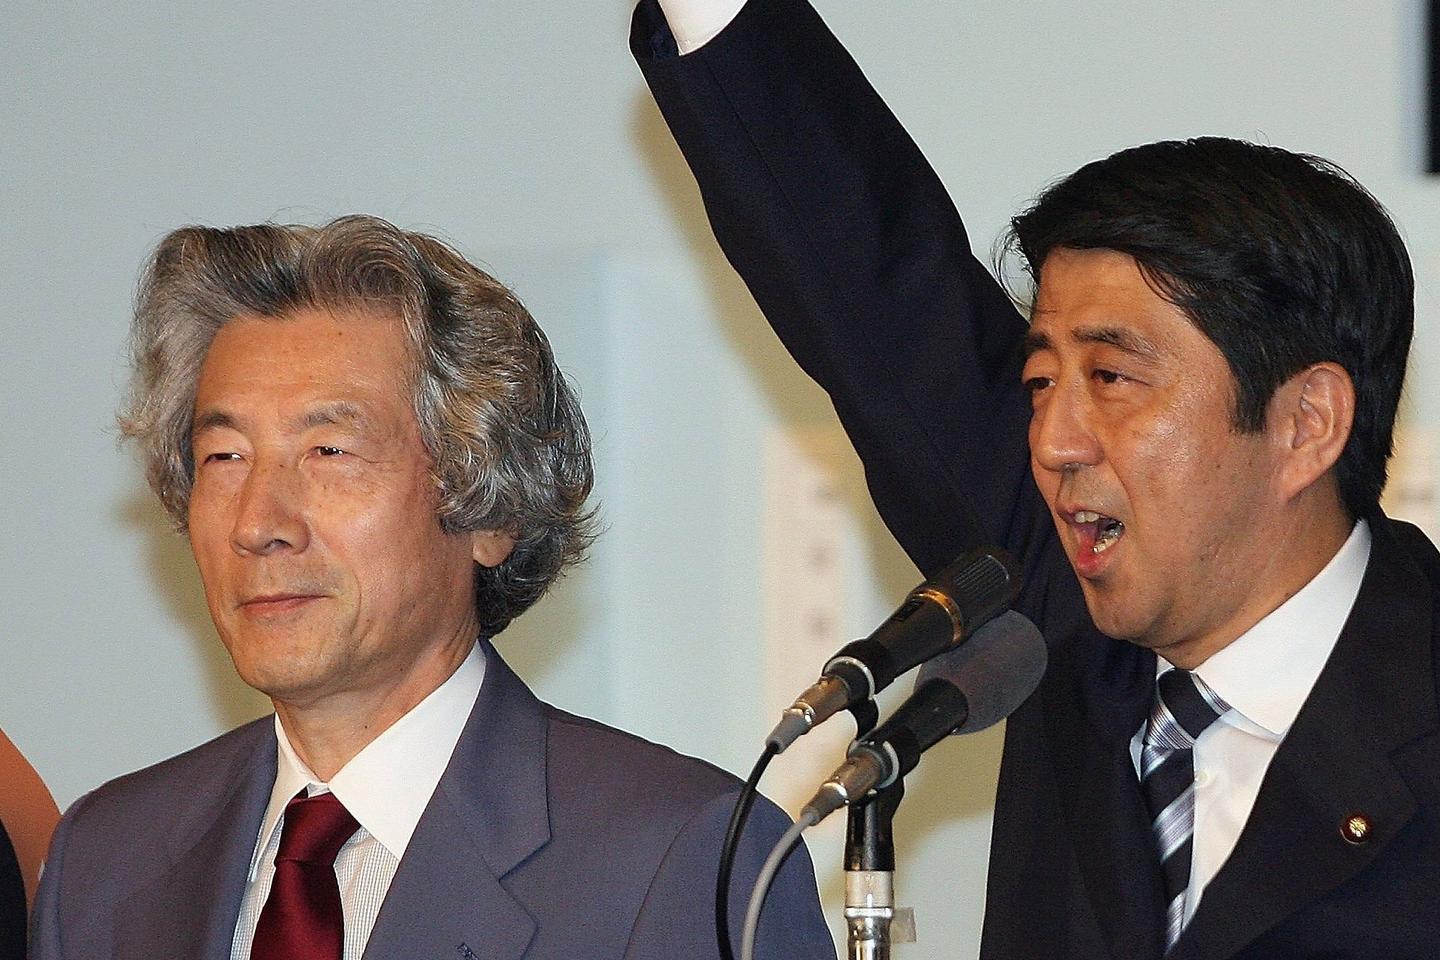 24 人 赞同了该文章 日本前首相小泉纯一郎有两个儿子为世人所知,这